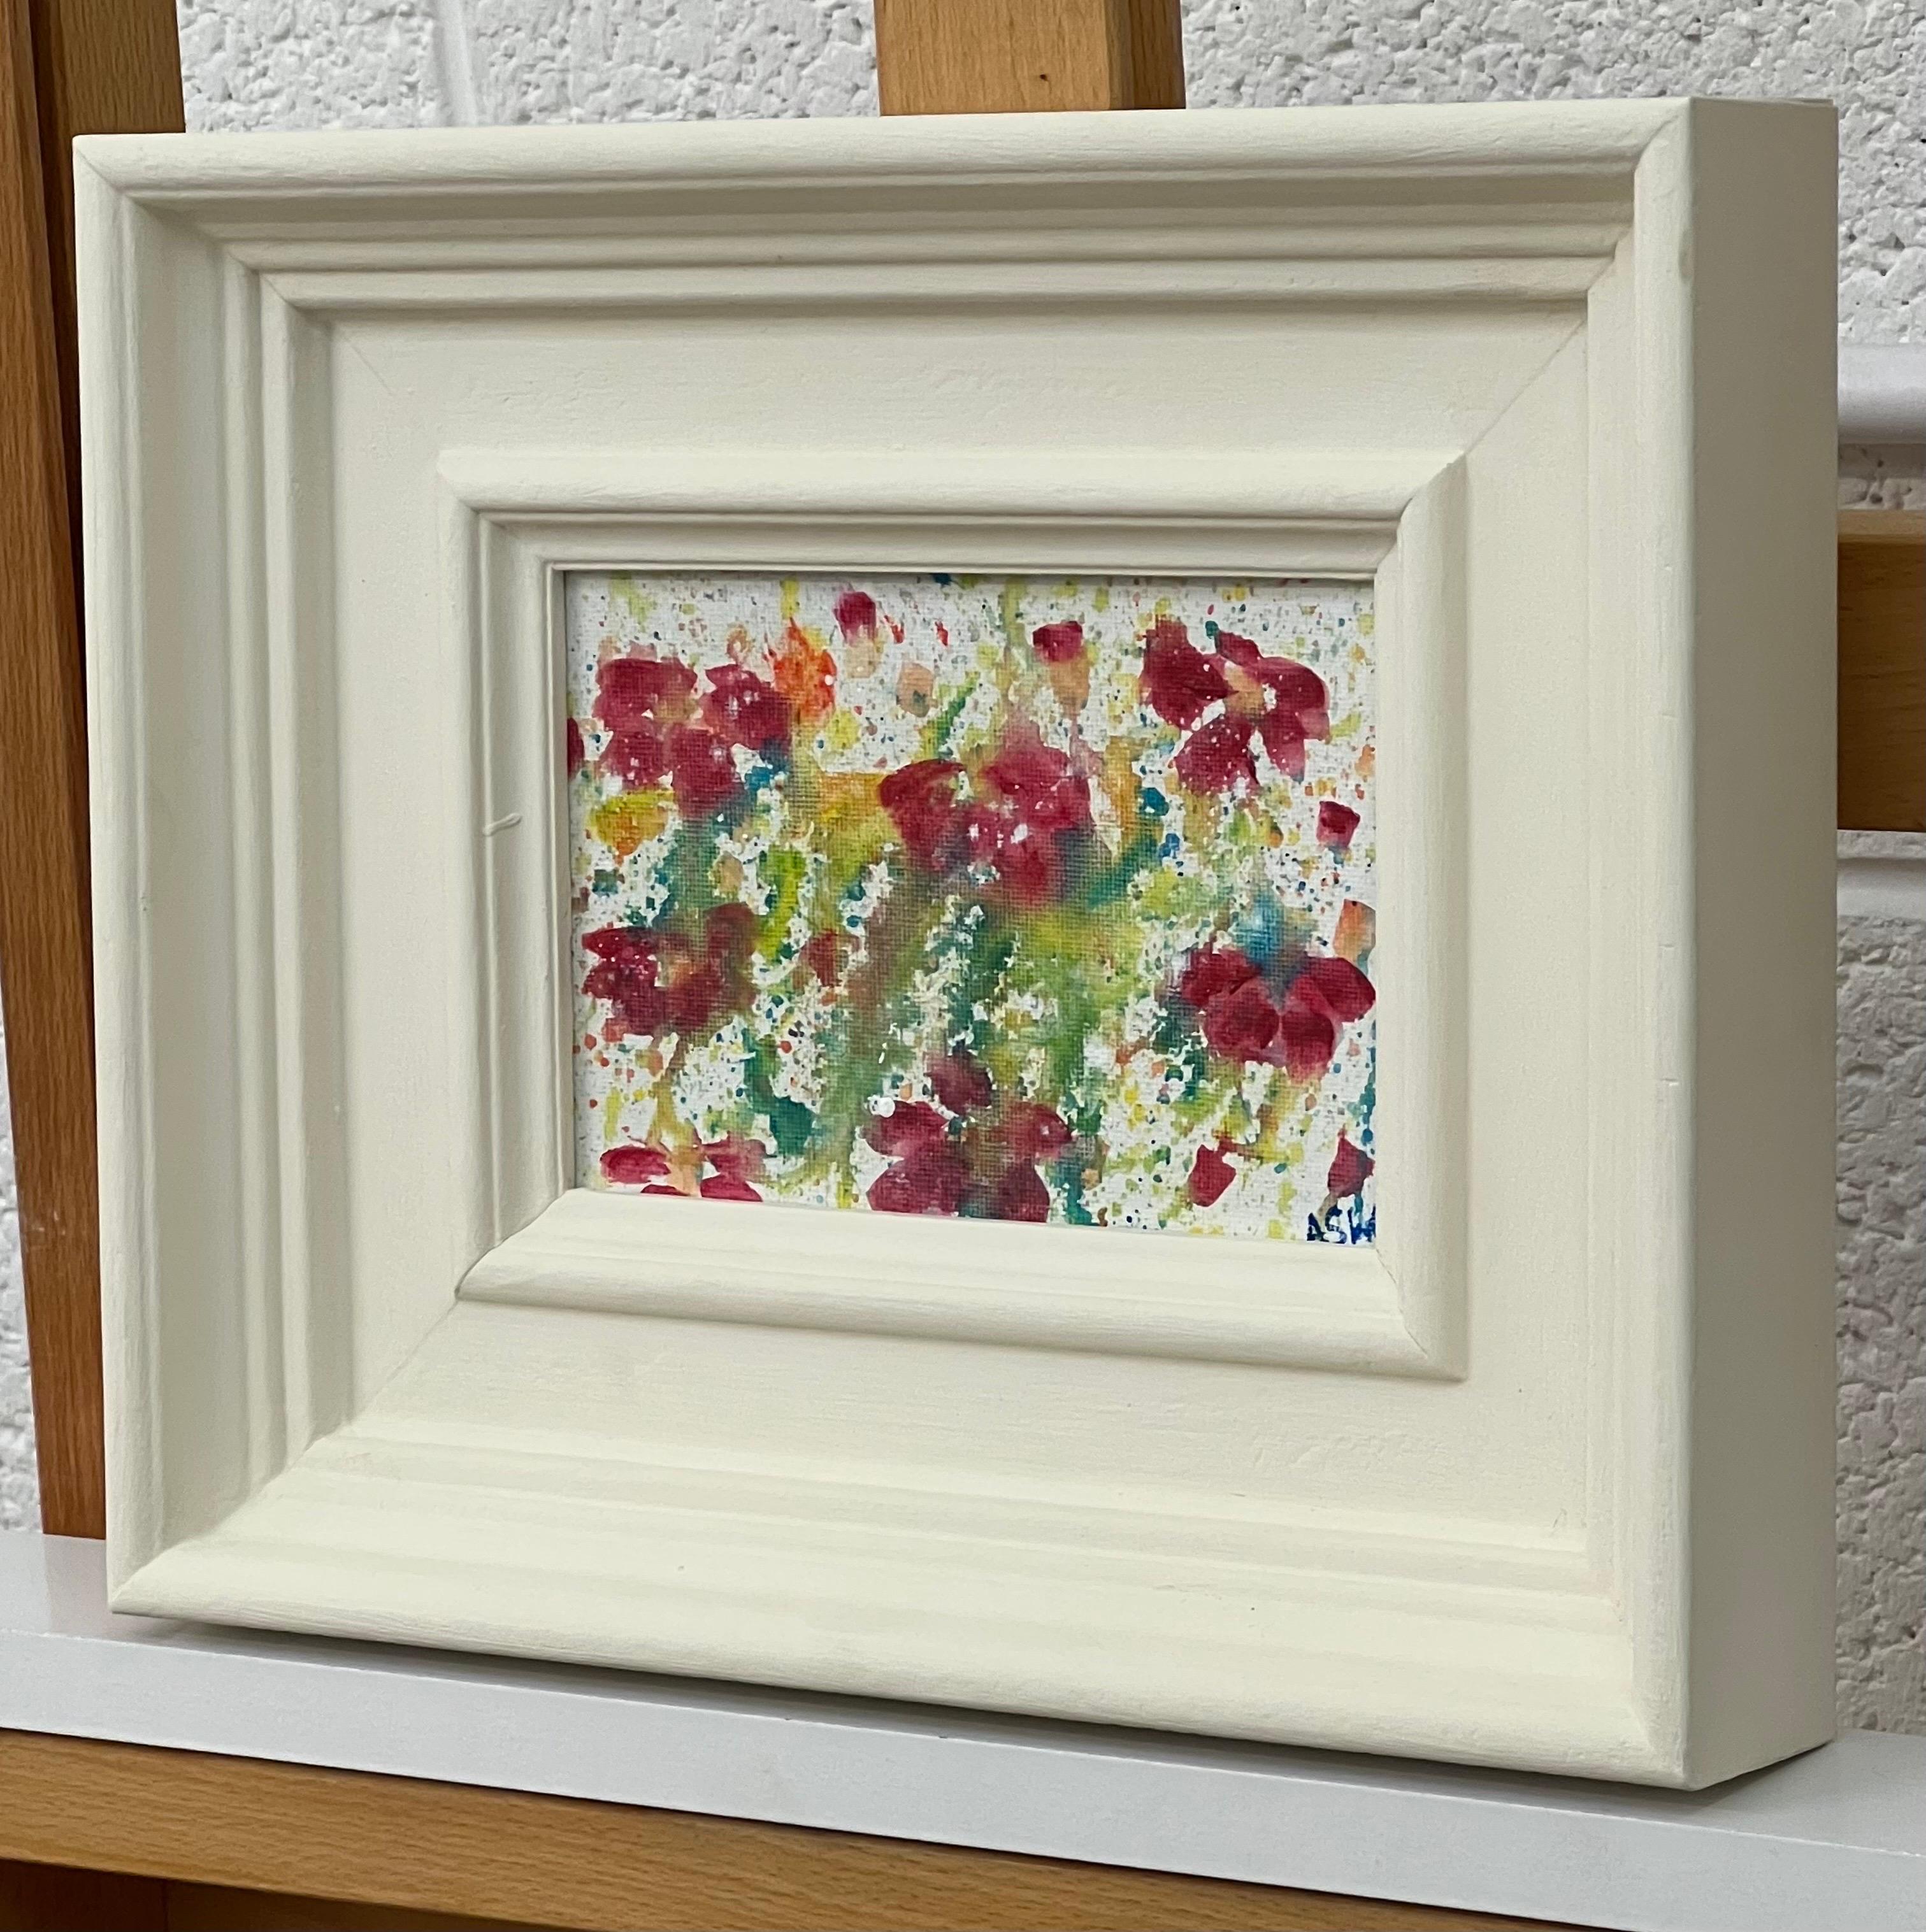 Étude d'une fleur abstraite miniature sur toile blanche par l'artiste britannique contemporaine Angela Wakefield.

L'œuvre d'art mesure 7 x 5 pouces
Le cadre mesure 12 x 10 pouces 

Angela Wakefield a fait deux fois la couverture de 